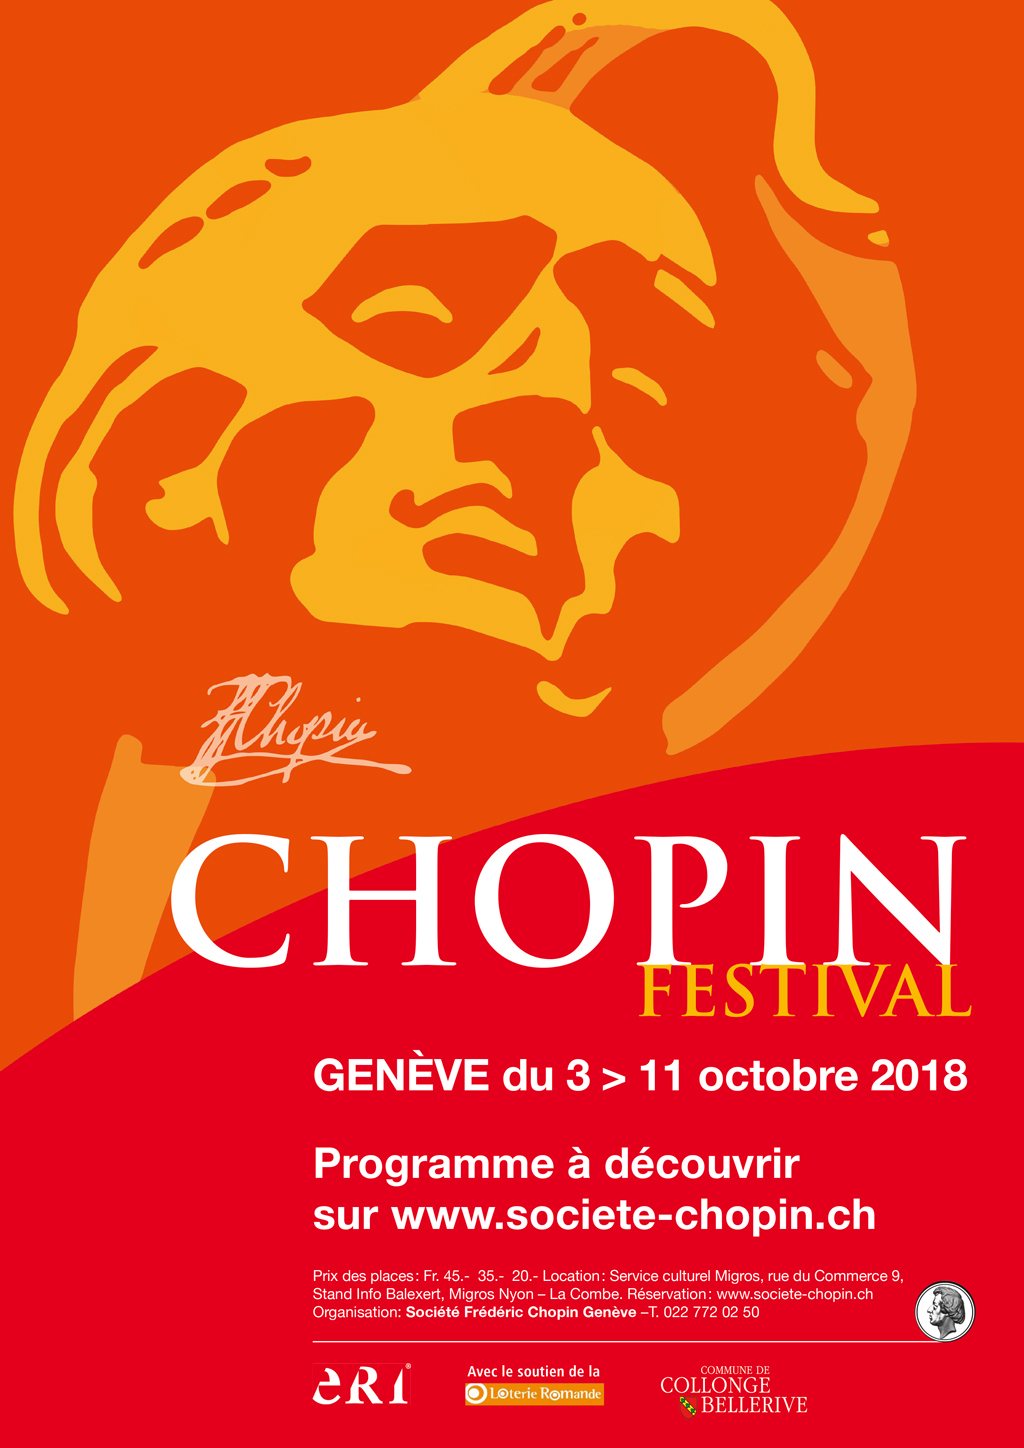 Geneva Chopin Festival 2018